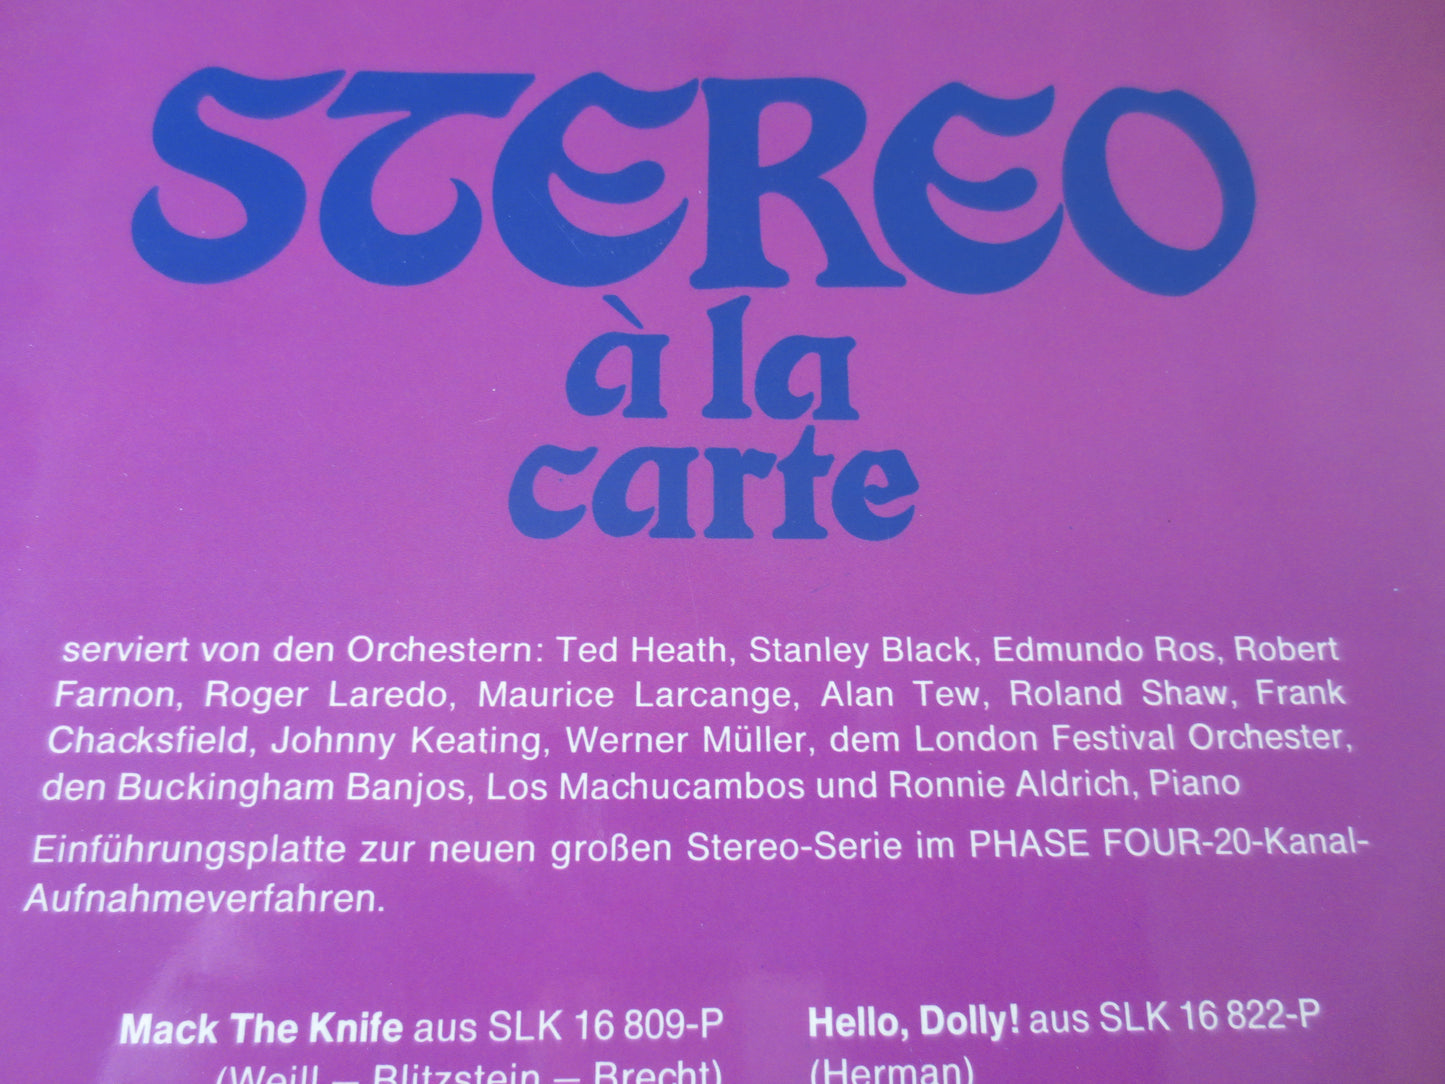 STEREO a'la CARTE, Decca Records, JAZZ Records, Vintage Vinyl, Record Vinyl, Jazz Albums, Vinyl Albums, Lps, 1968 Records